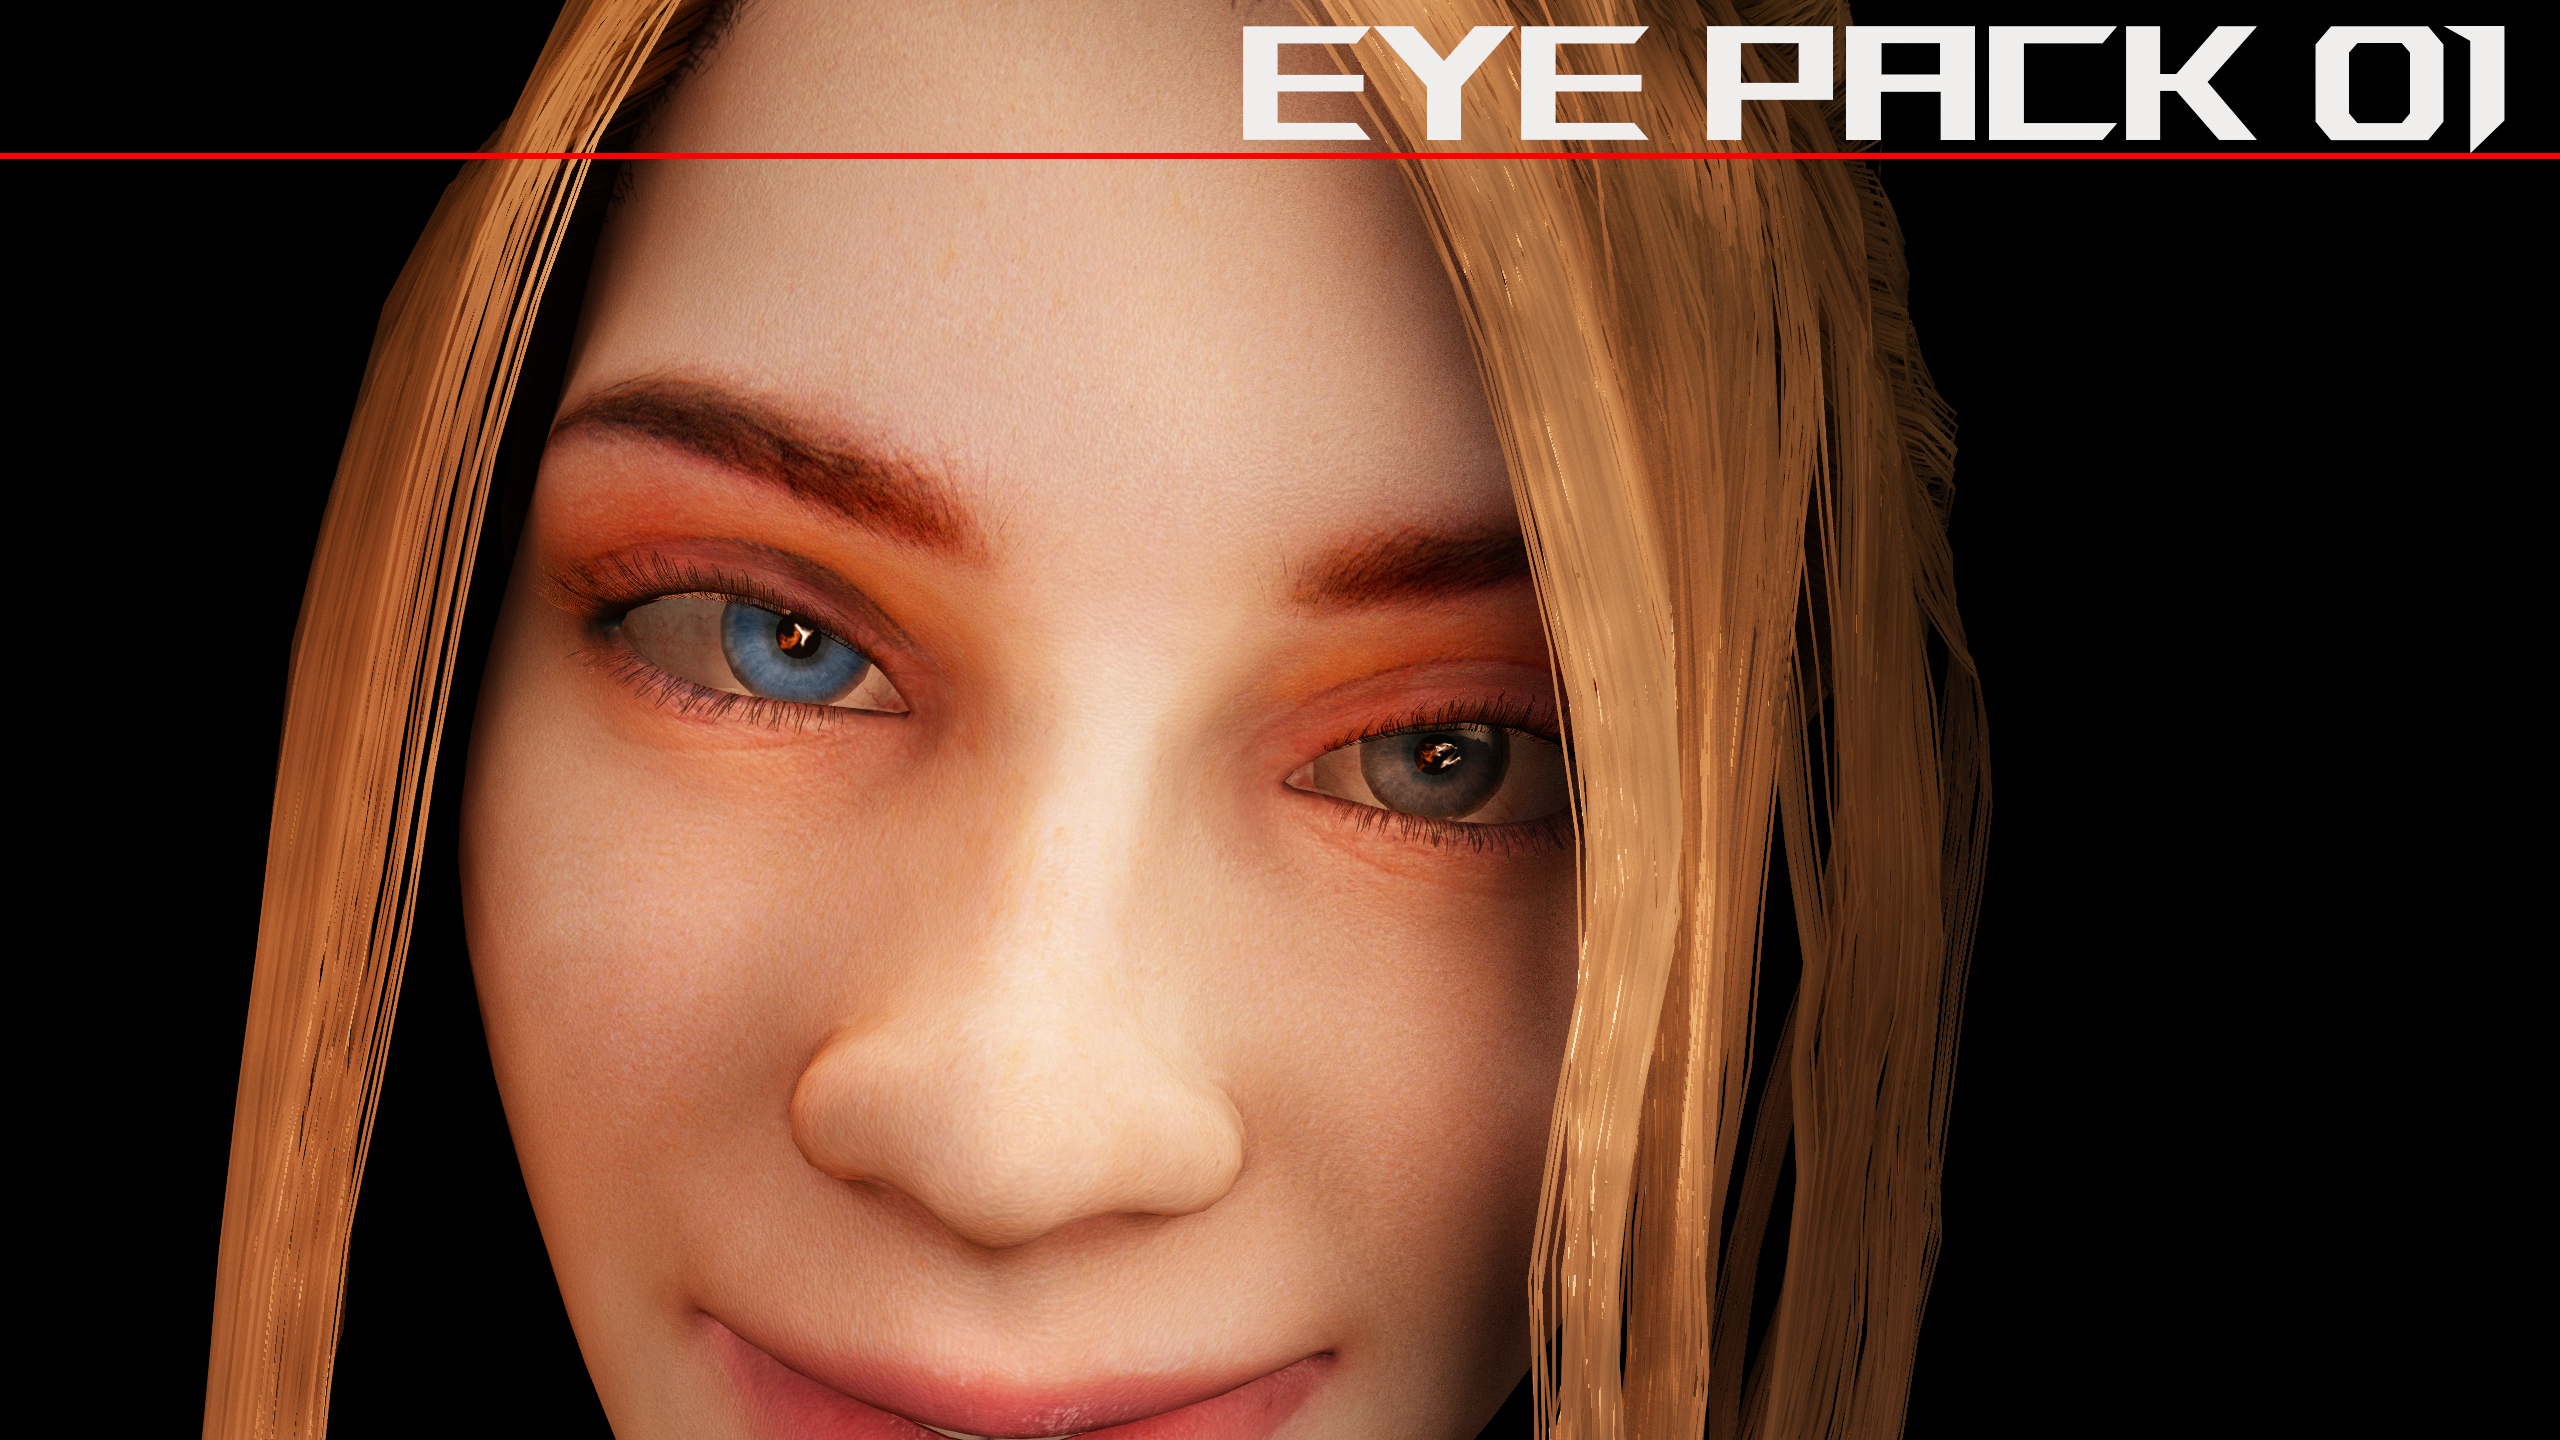 EyePack01_Image.jpg